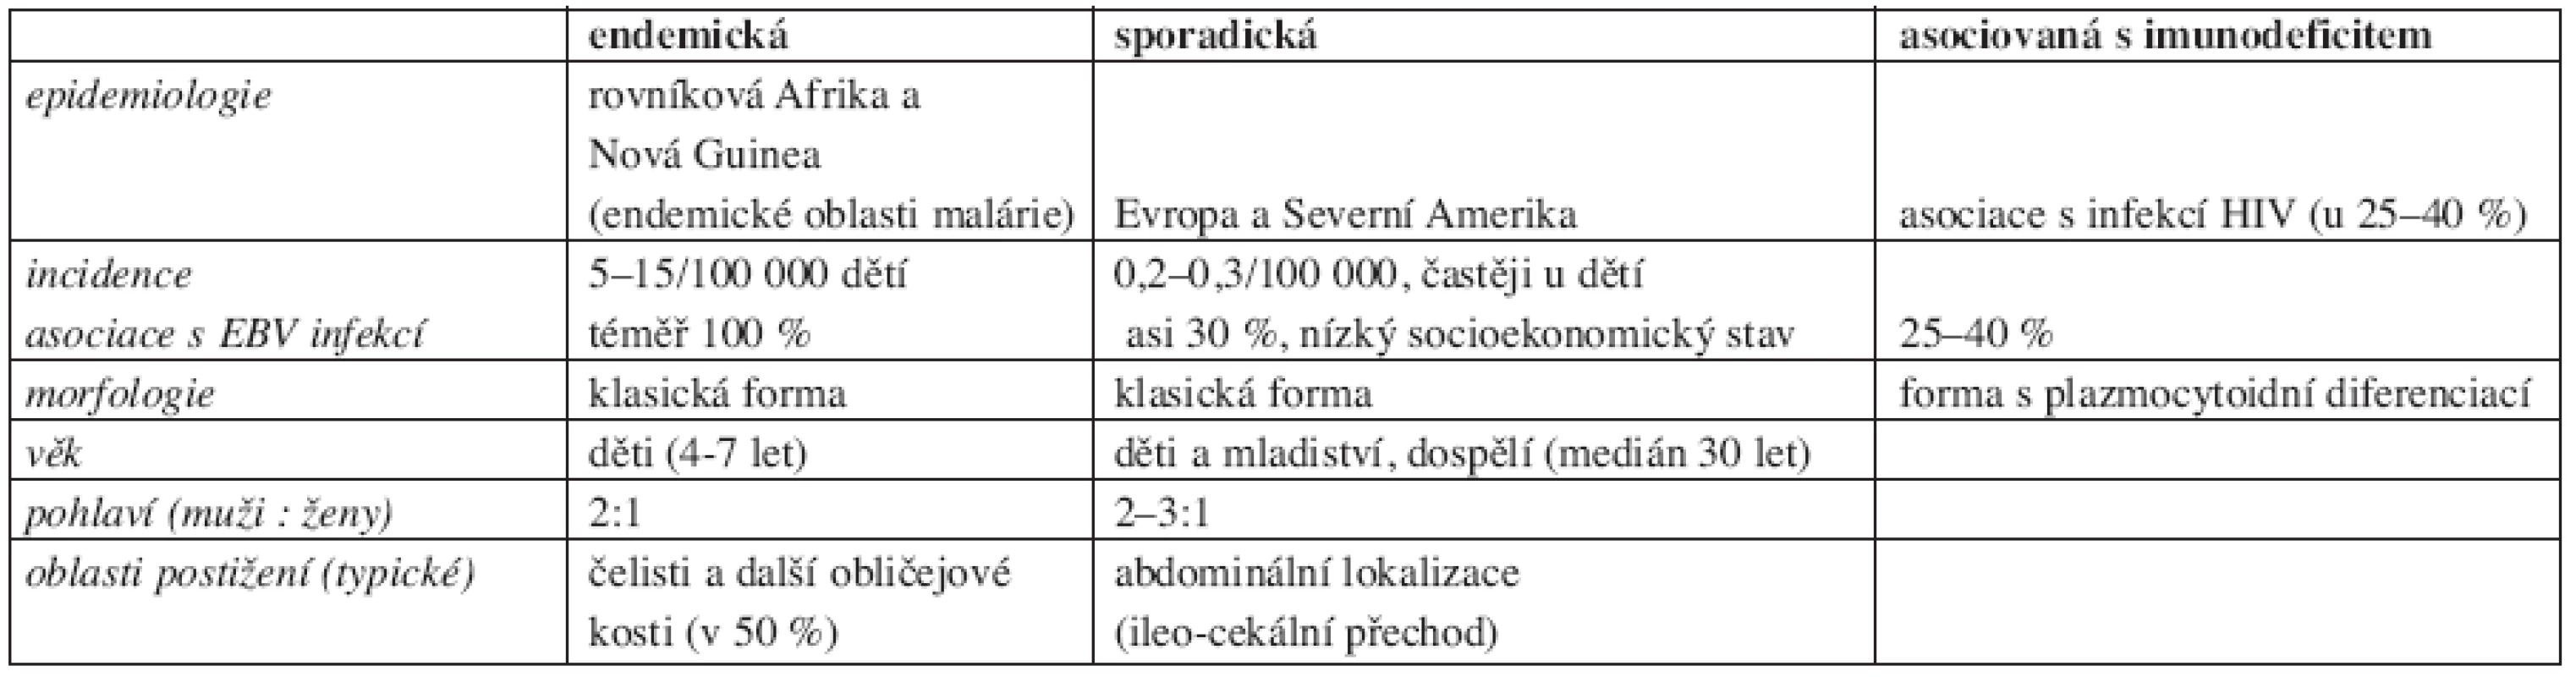 Přehled charakteristik jednotlivých klinických variant Burkittova lymfomu (5, 6).